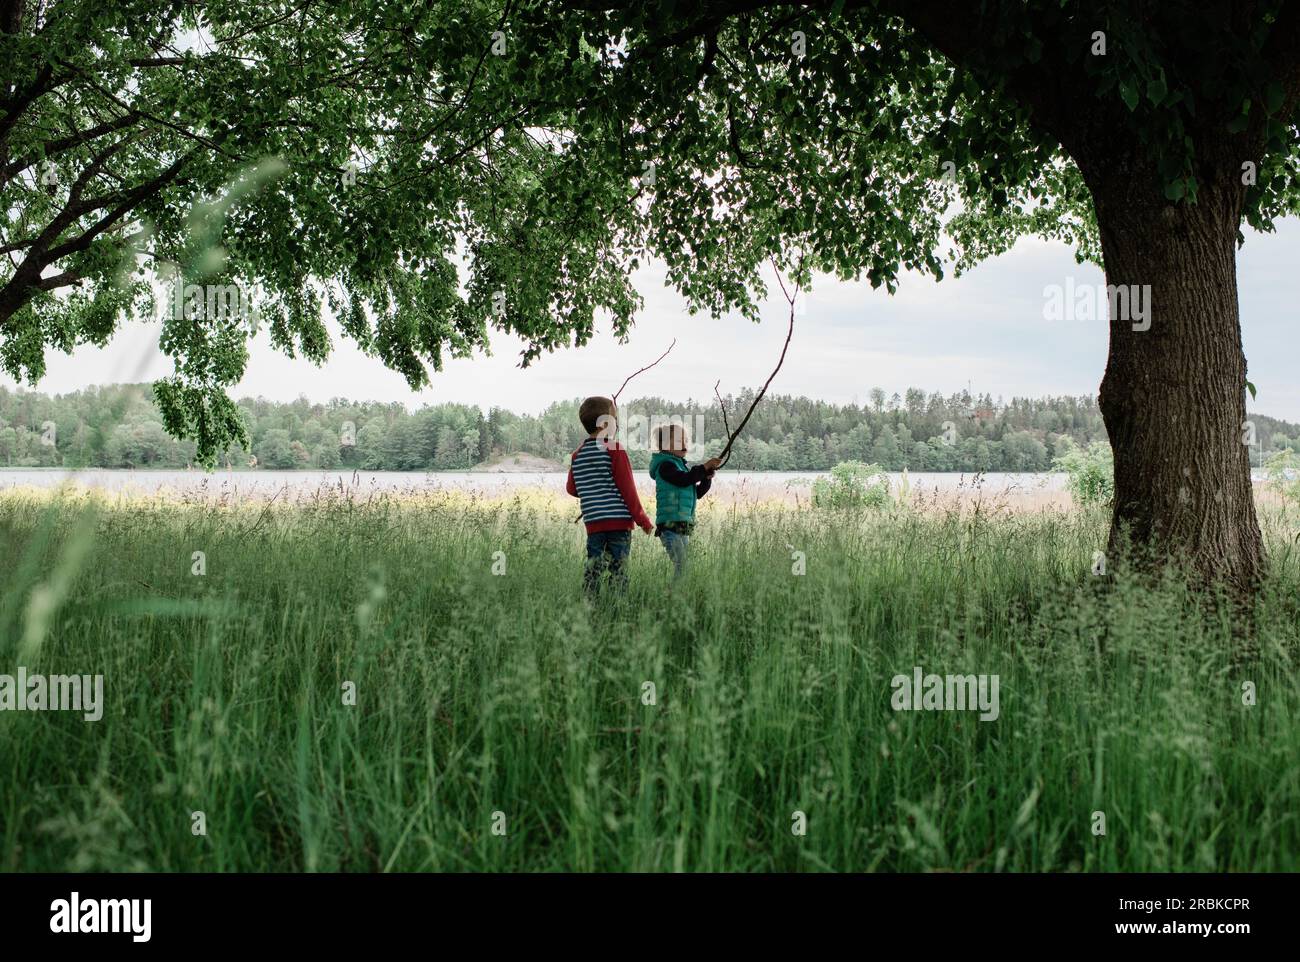 giovane ragazzo e ragazza stavano in un campo a giocare con i bastoncini Foto Stock